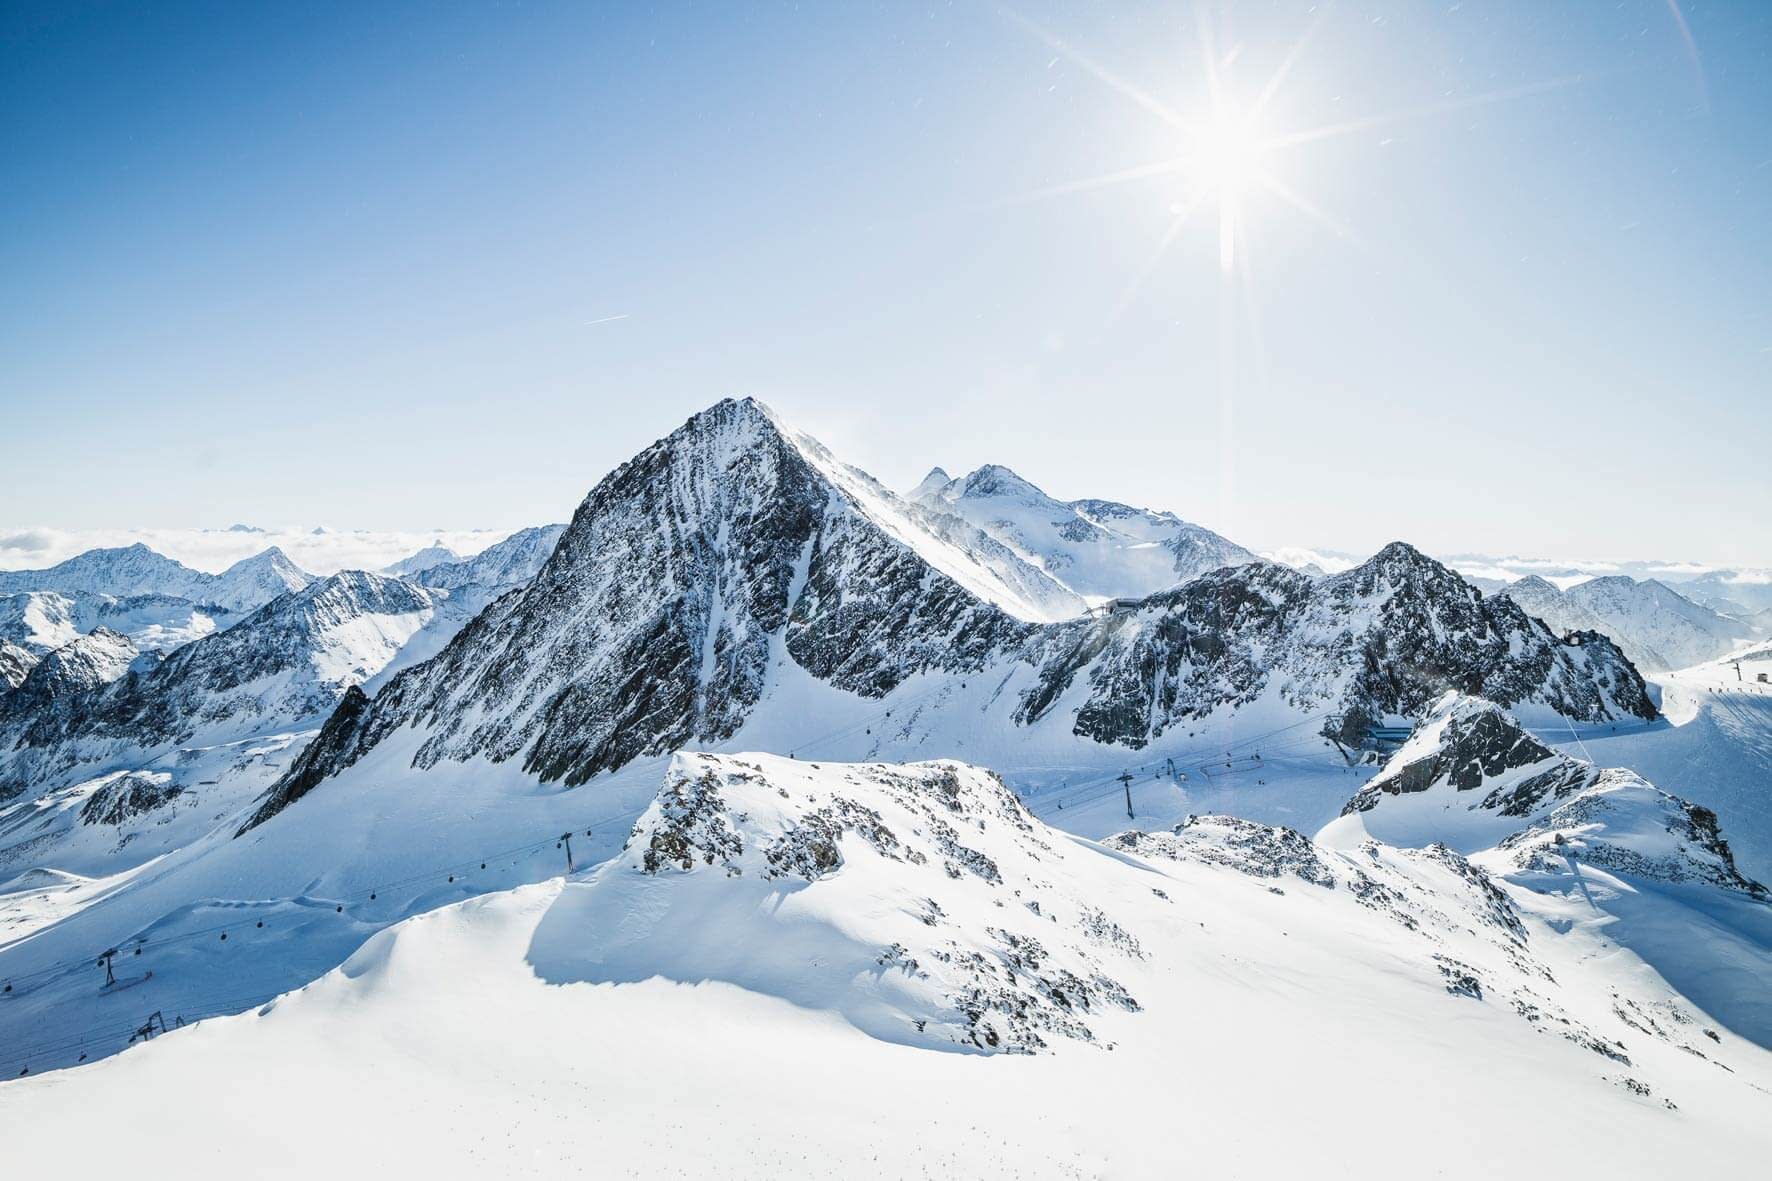 Stubai Glacier - the biggest glacier ski resort in Austria